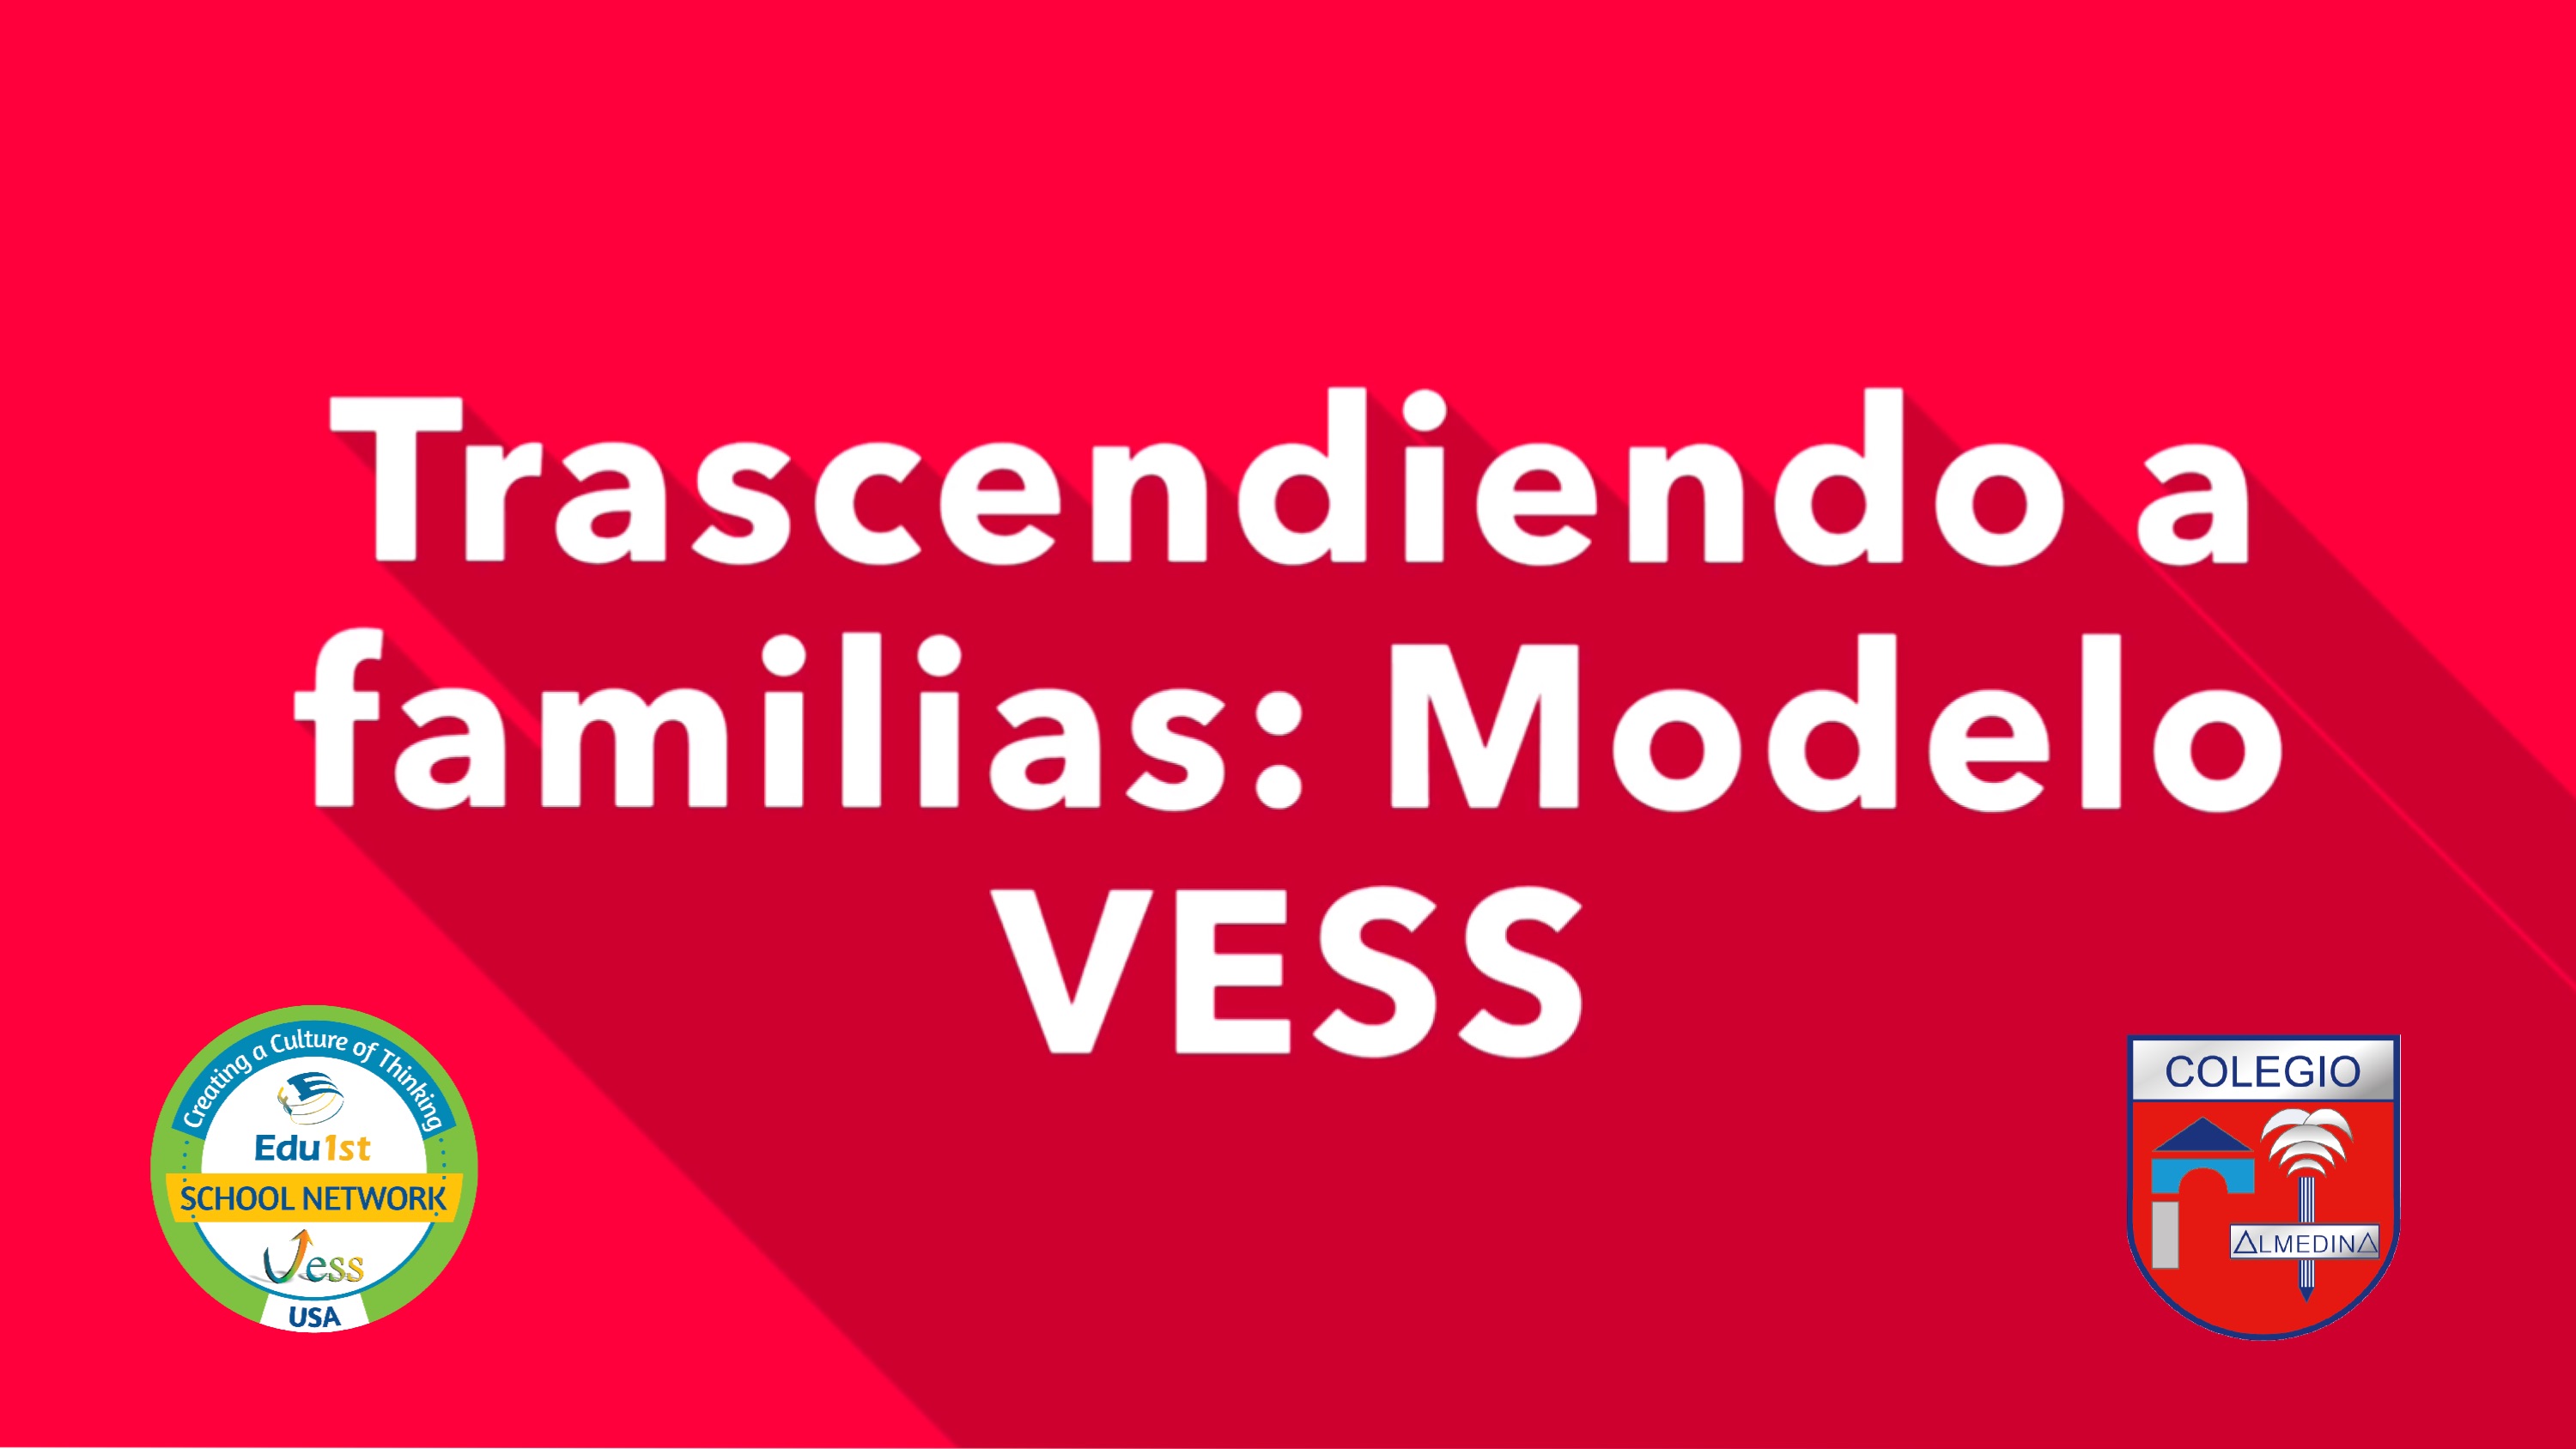 Trascendiendo a familias: Modelo VESS